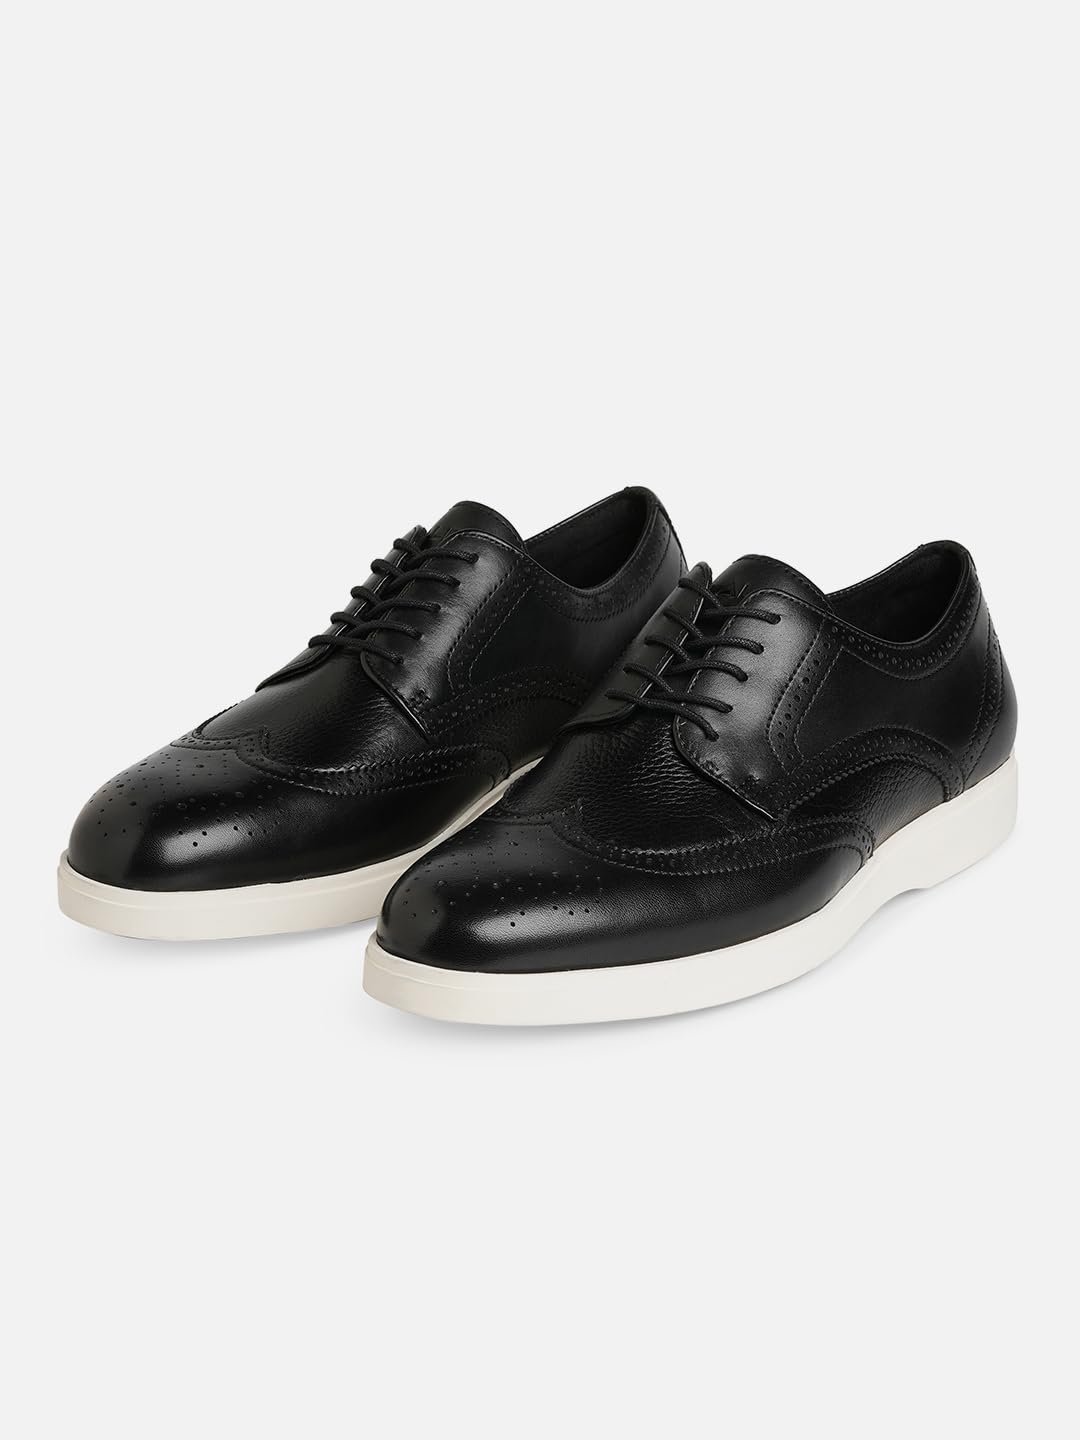 ALDO - LACE-UP Black Casual Shoes for Men 